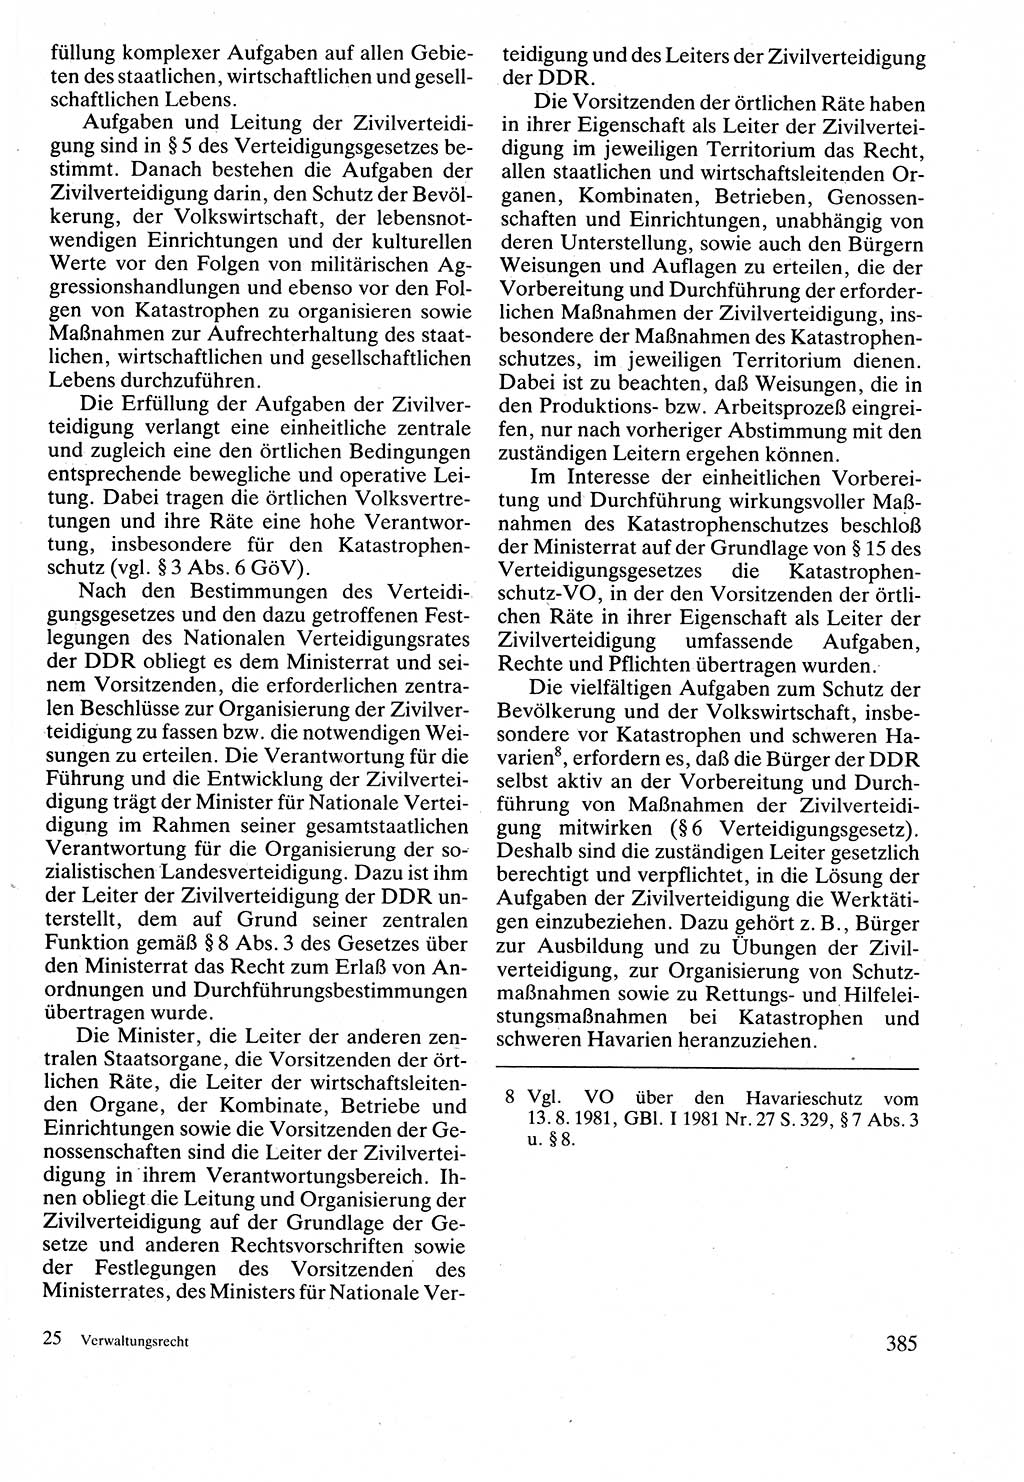 Verwaltungsrecht [Deutsche Demokratische Republik (DDR)], Lehrbuch 1988, Seite 385 (Verw.-R. DDR Lb. 1988, S. 385)